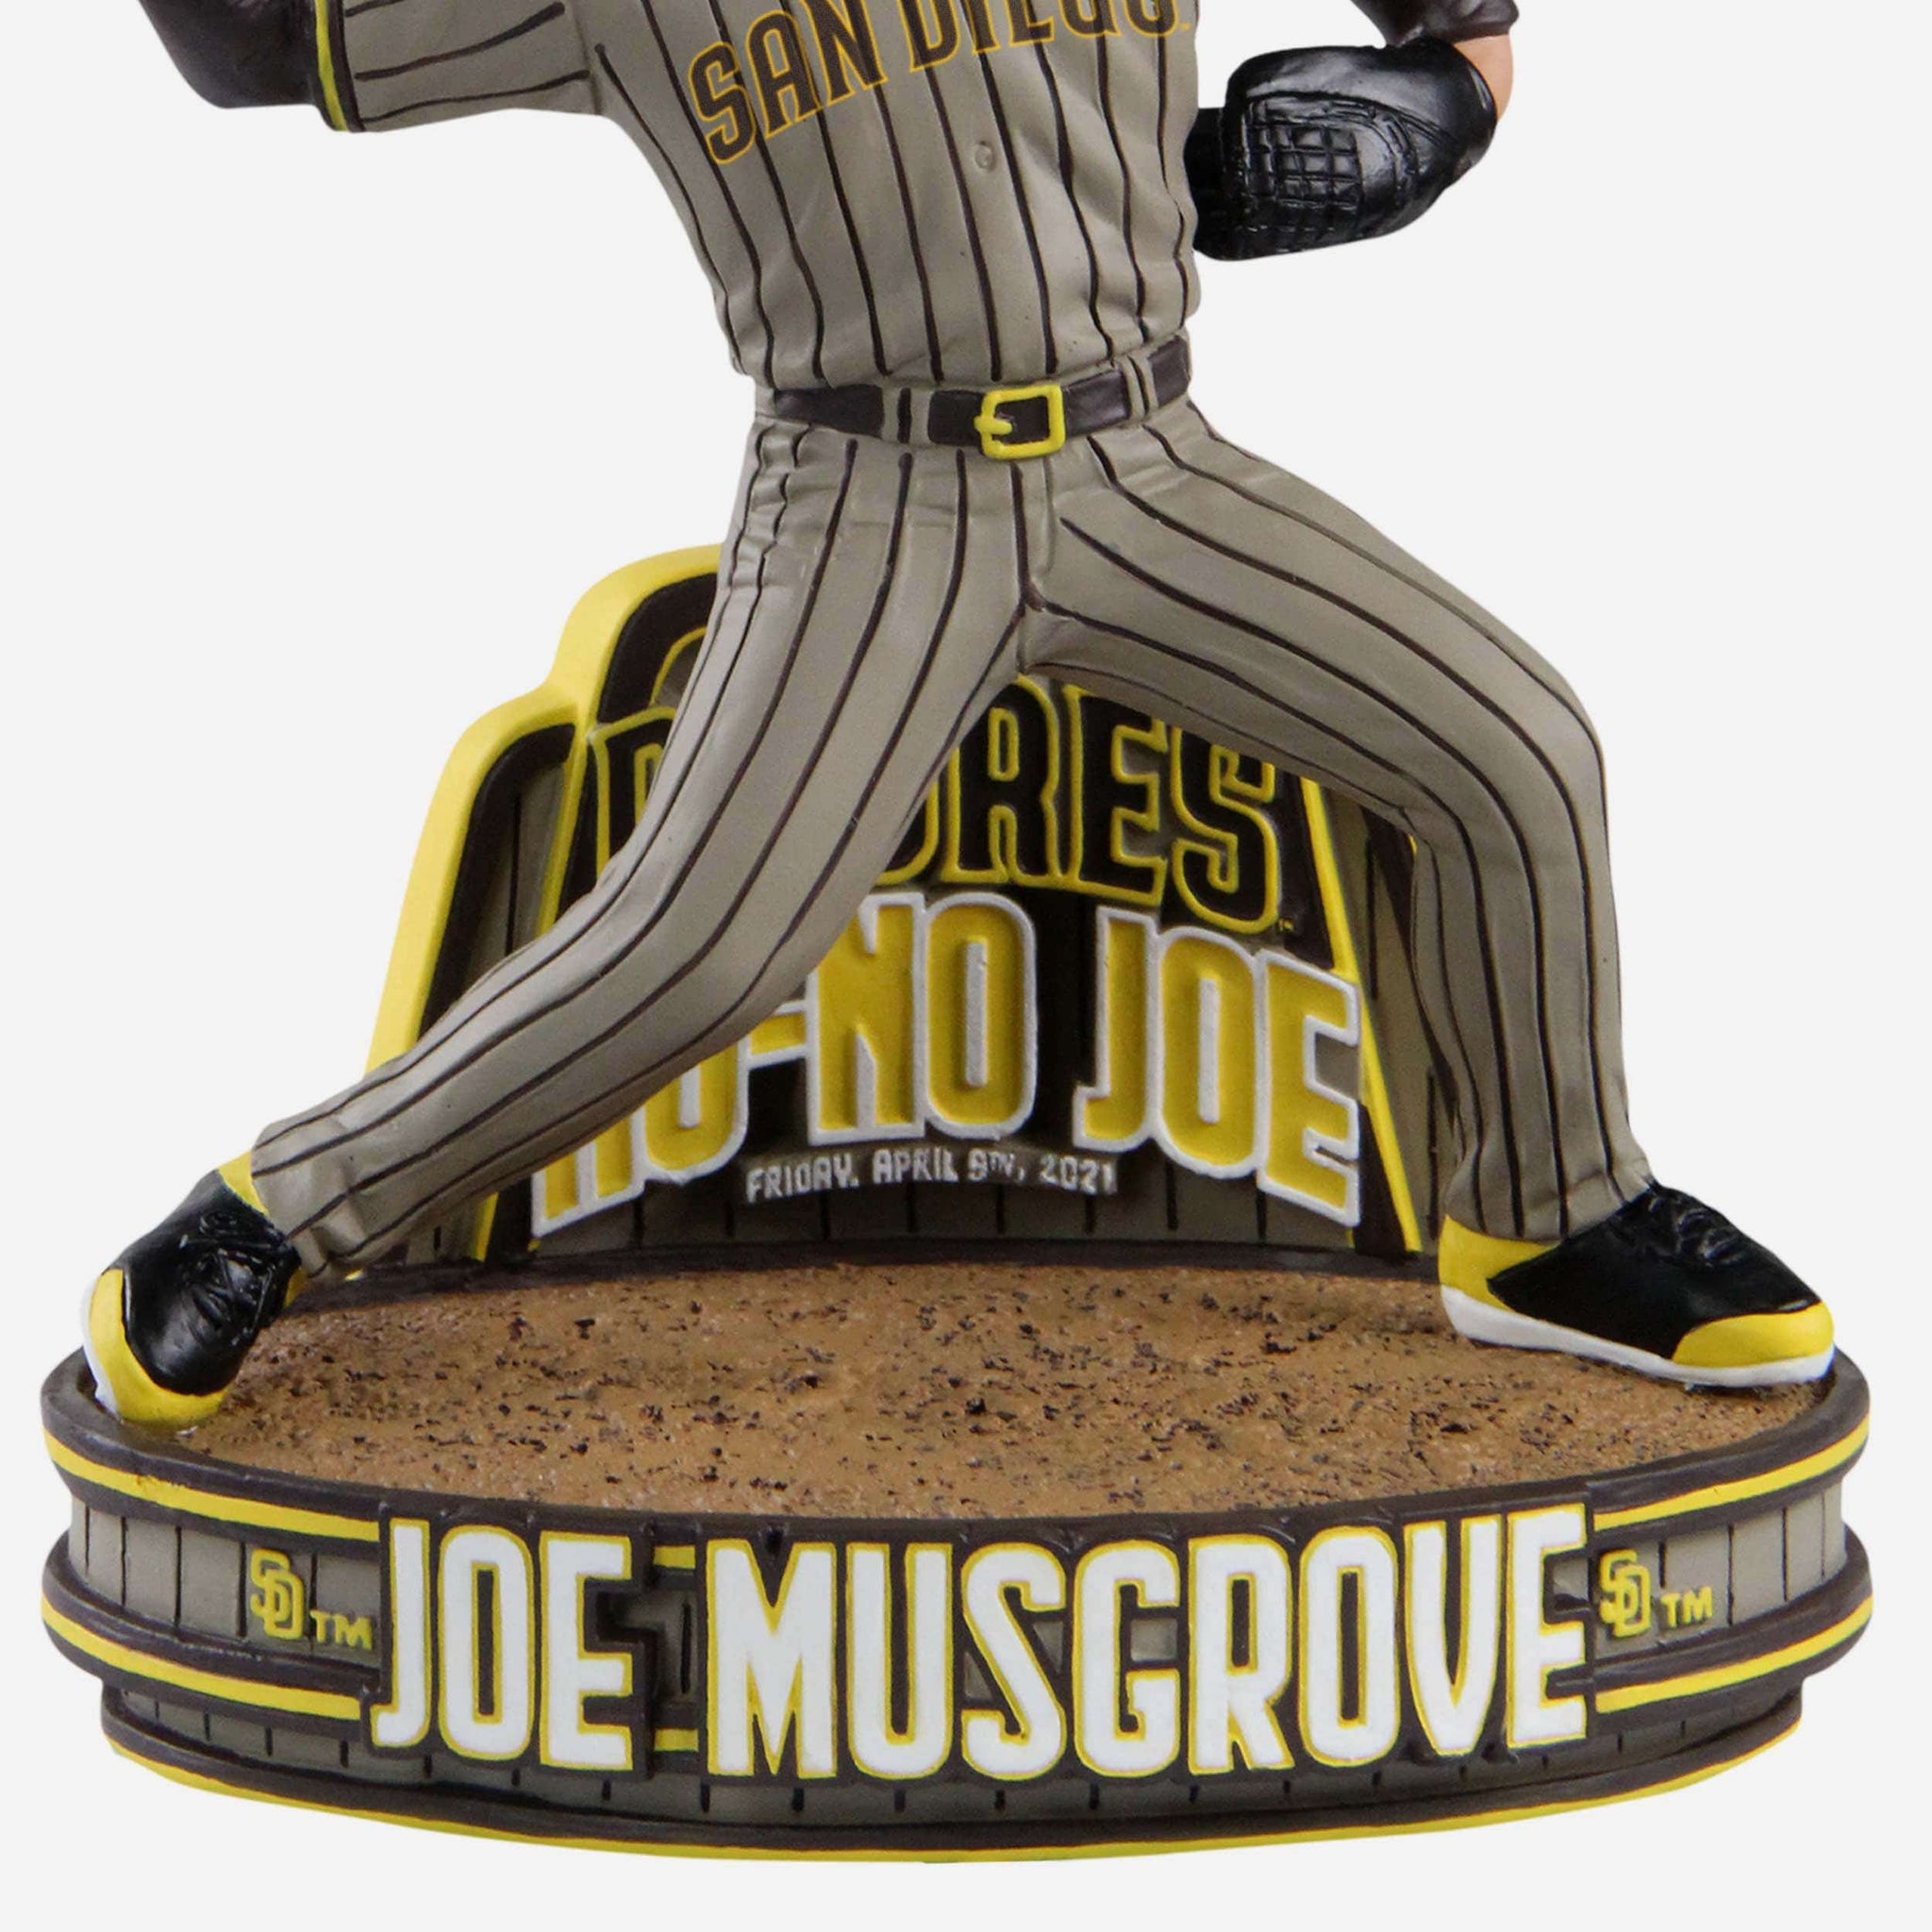 PRE-SALE: Joe Musgrove Autographed Jersey